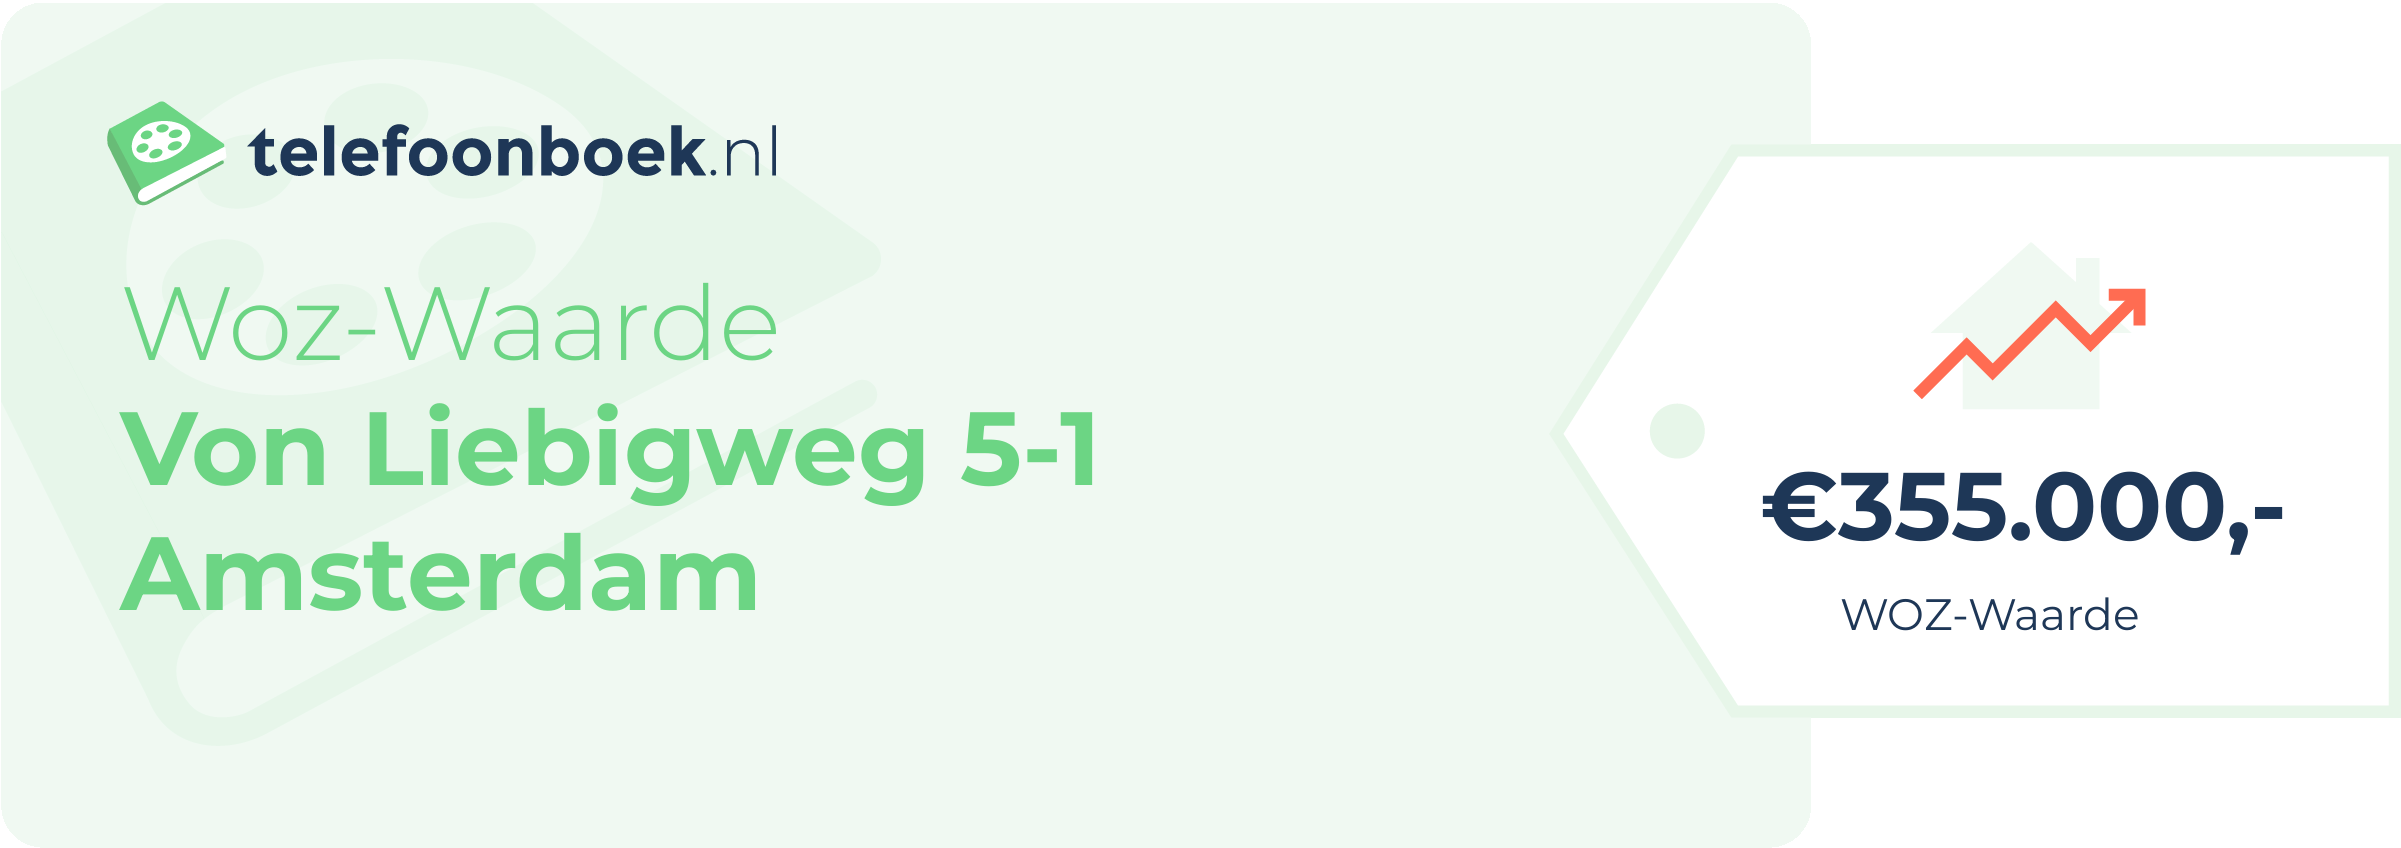 WOZ-waarde Von Liebigweg 5-1 Amsterdam